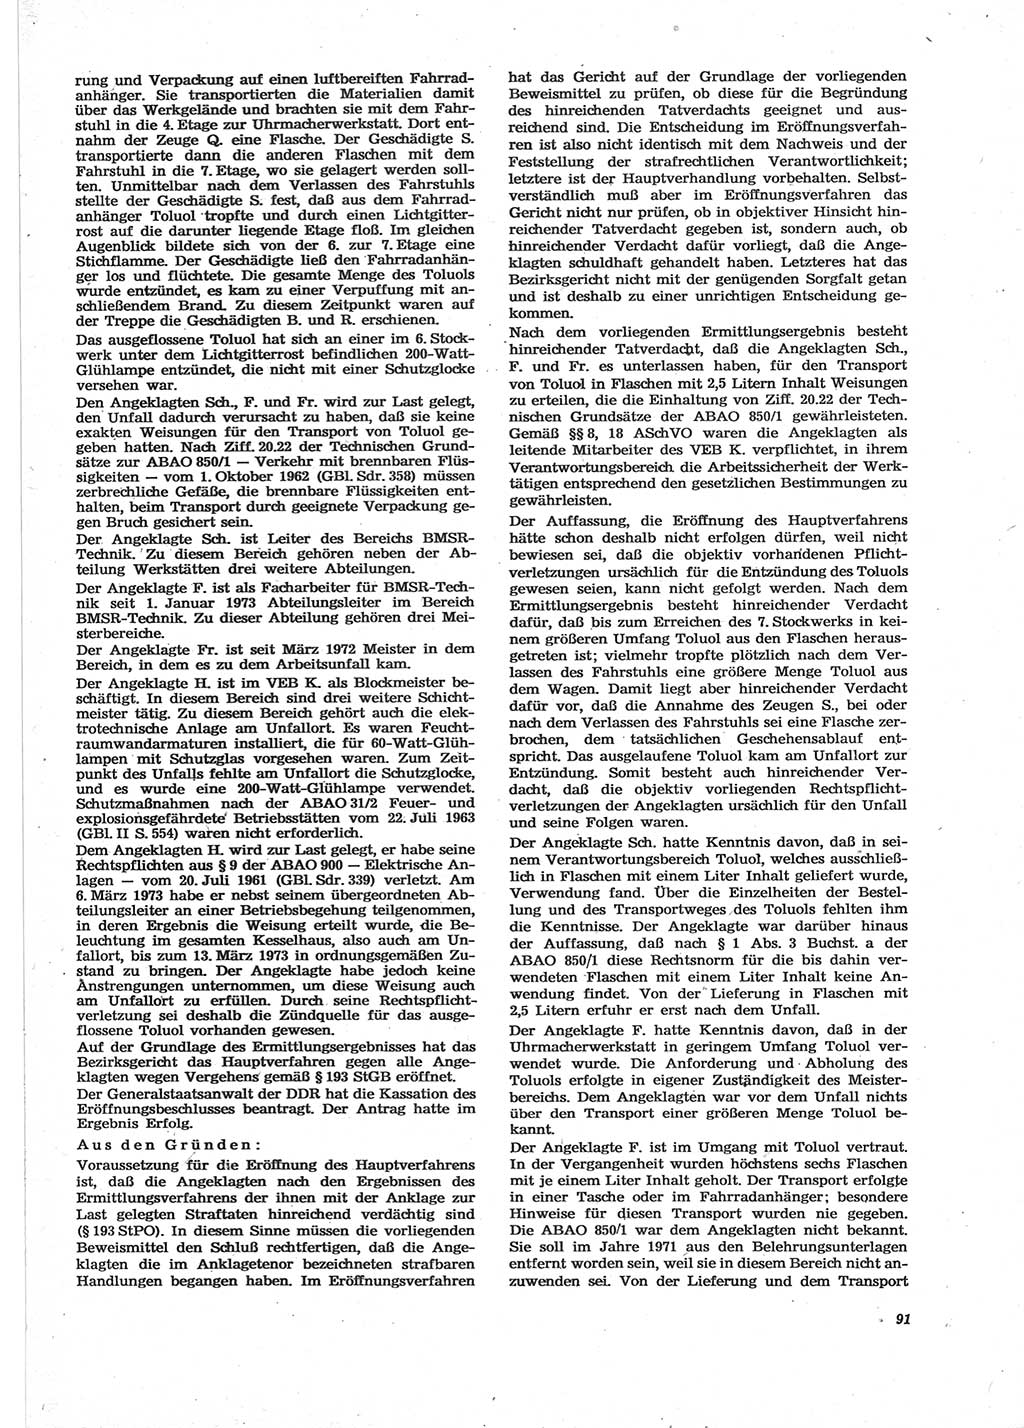 Neue Justiz (NJ), Zeitschrift für Recht und Rechtswissenschaft [Deutsche Demokratische Republik (DDR)], 28. Jahrgang 1974, Seite 91 (NJ DDR 1974, S. 91)